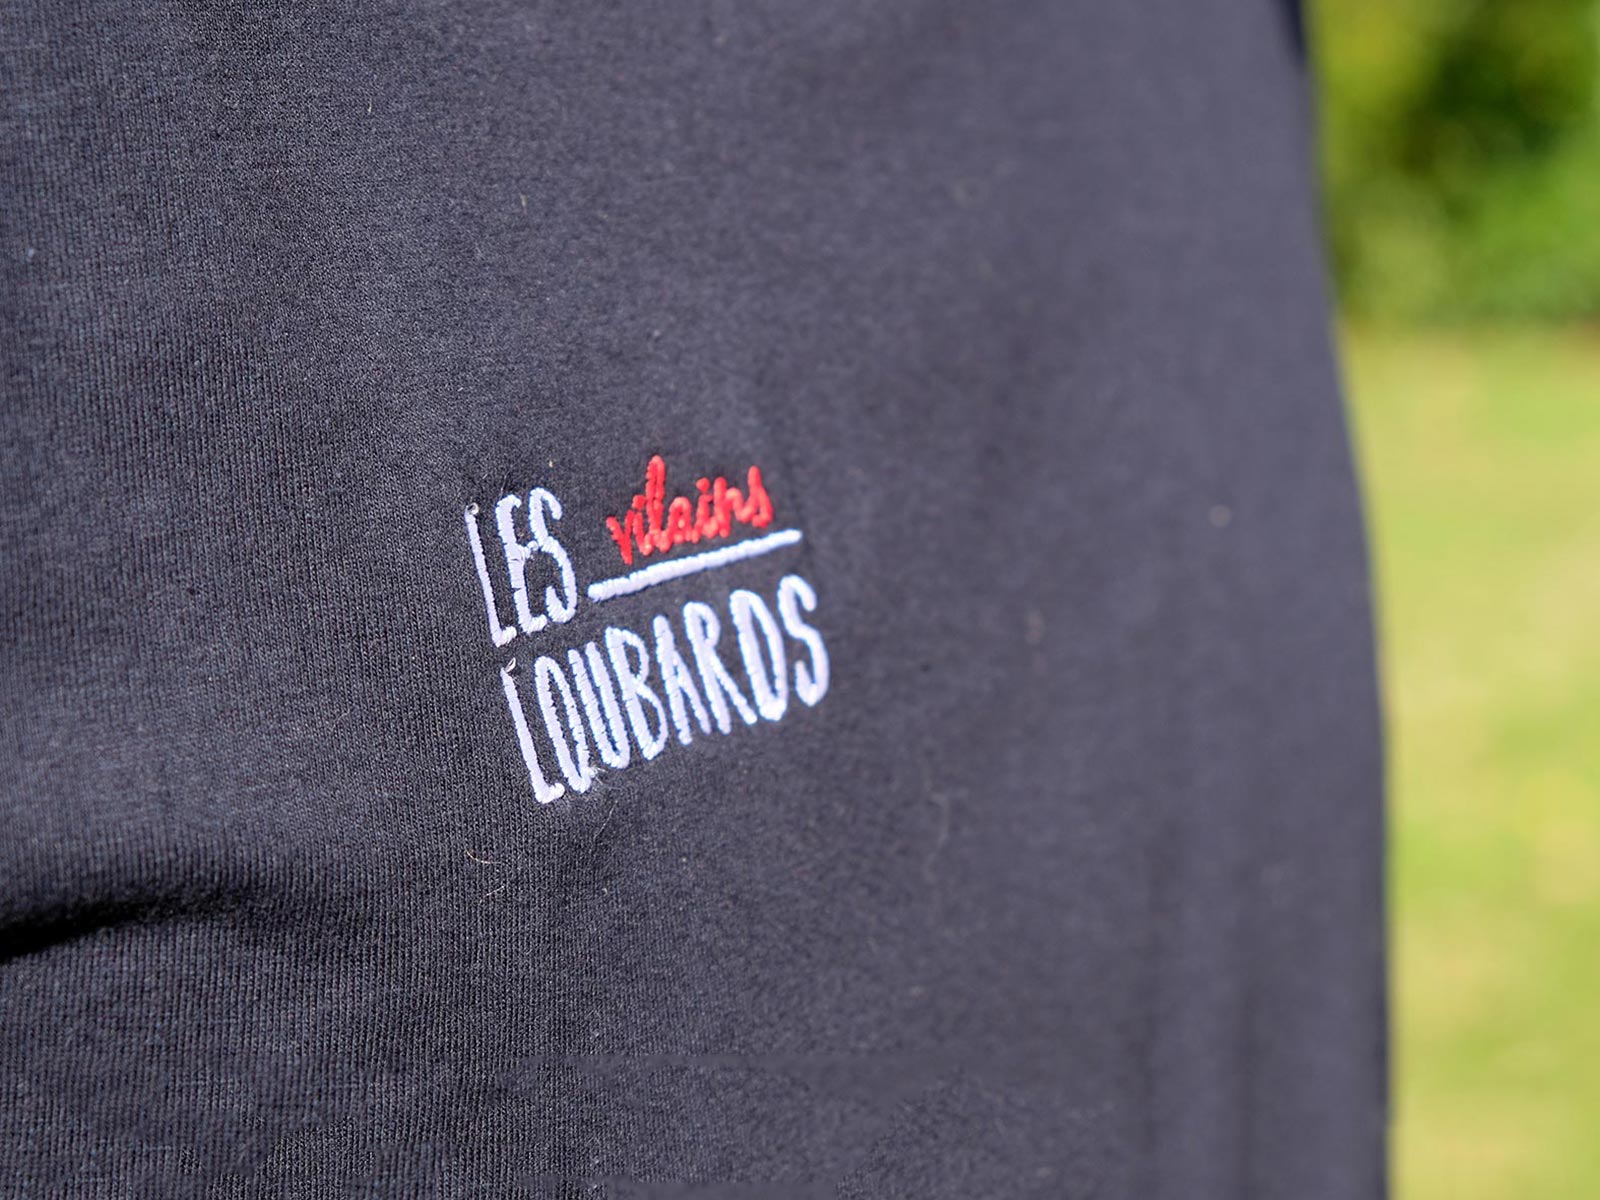 Les Loubards, marque de tee-shirt nantaise